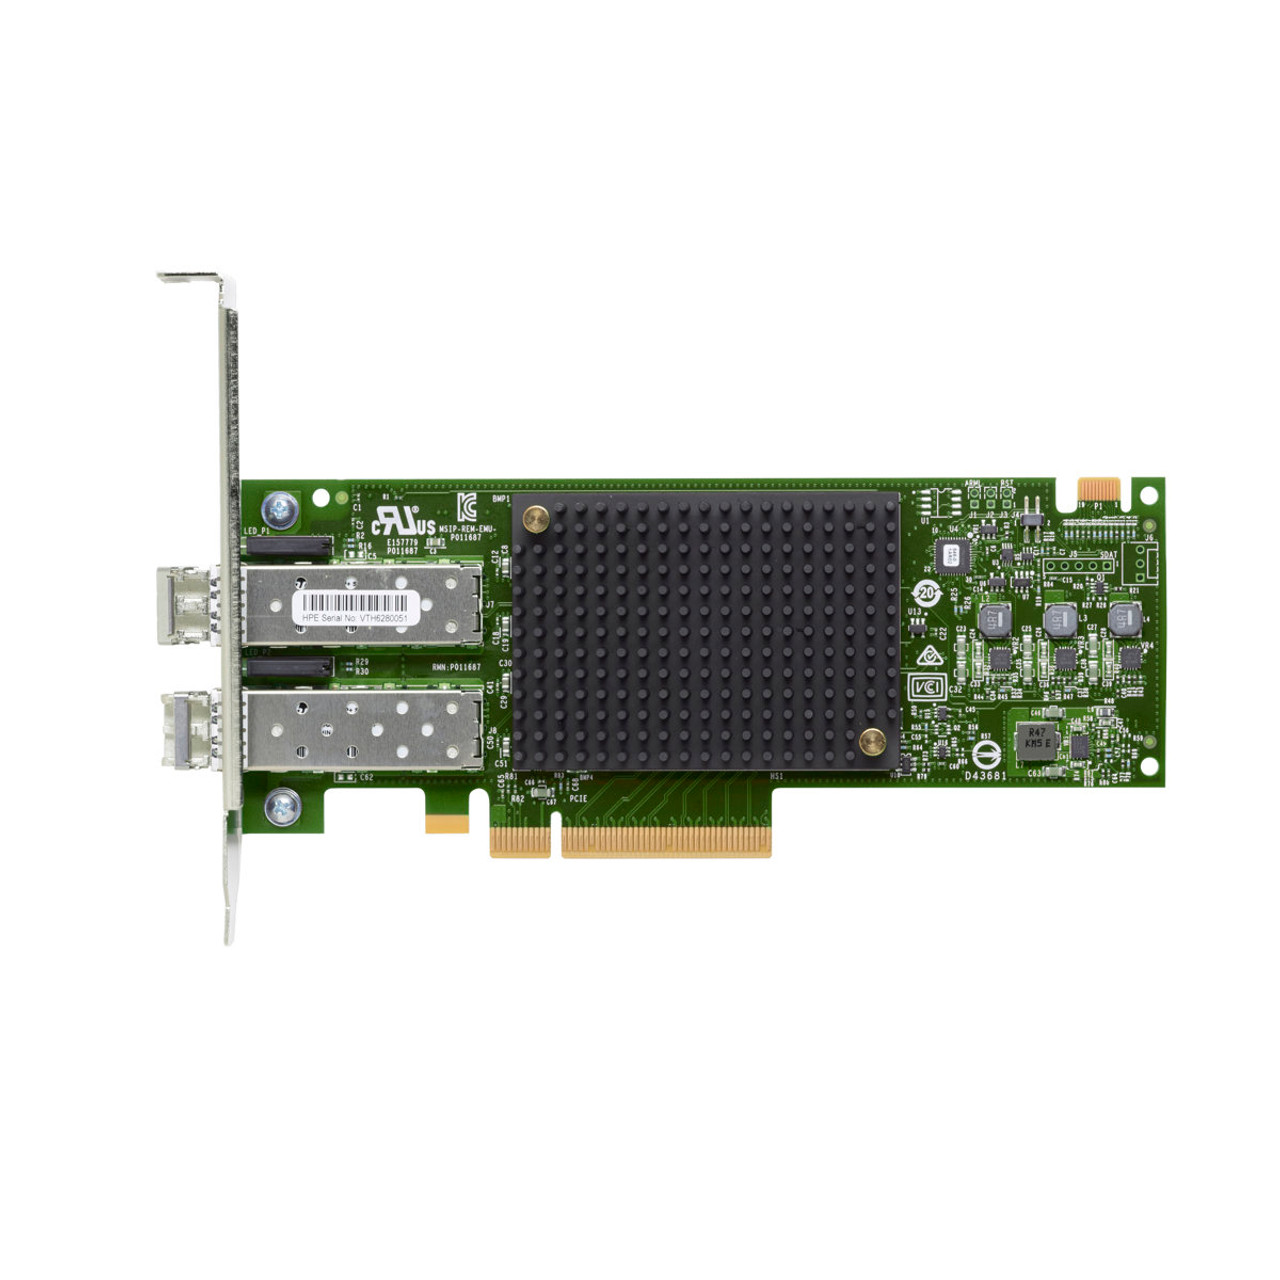 HPE StoreFabric 870002-001 SN1200E 16Gb 2-Port PCIe Fibre Channel HBA